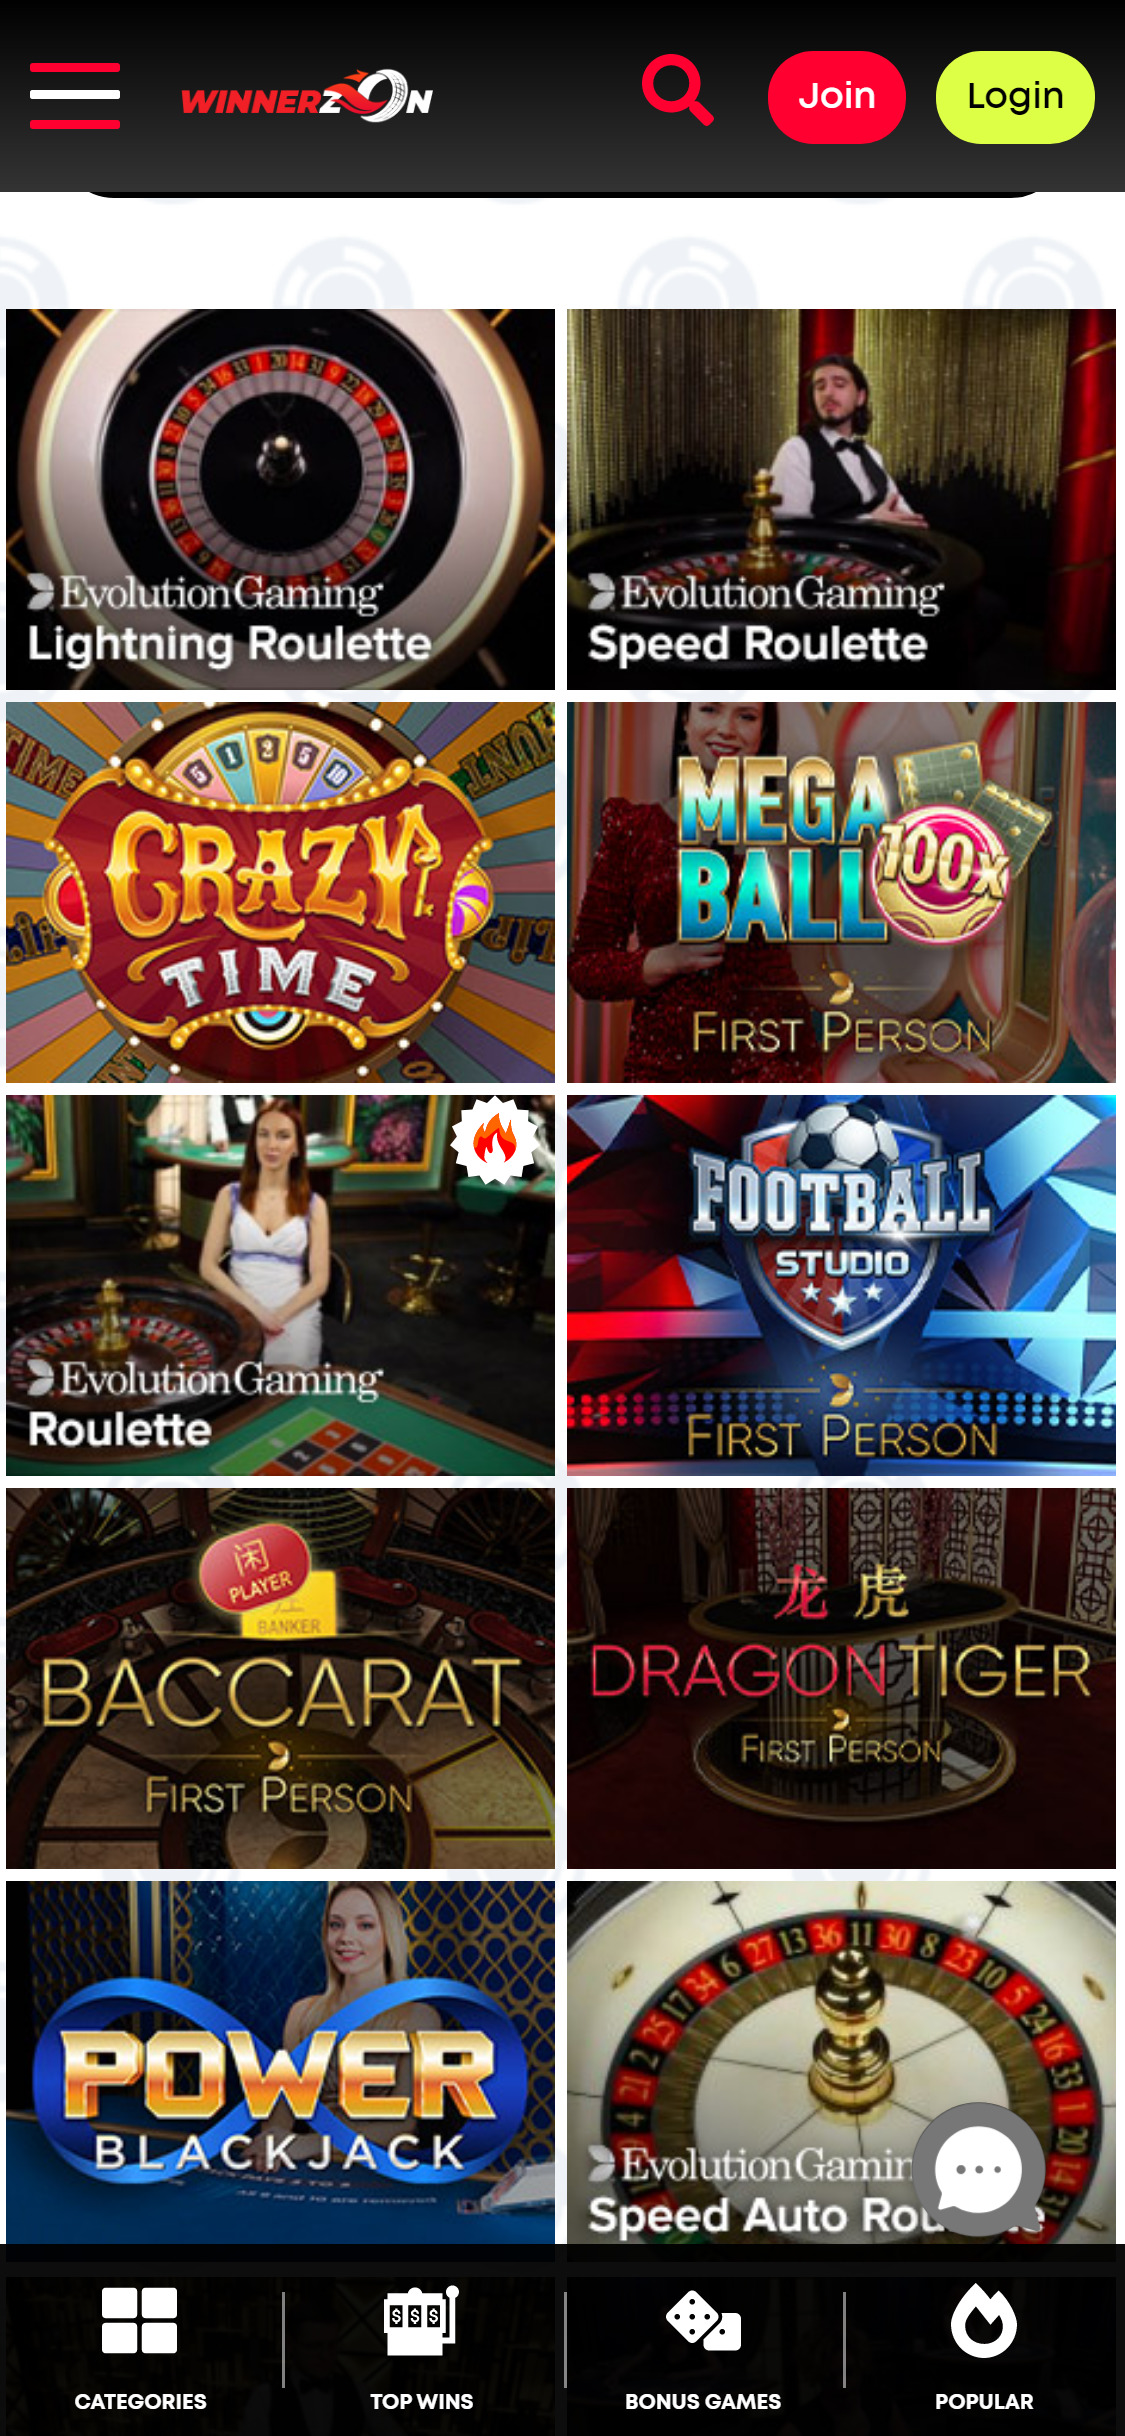 Winnerzon Mobile Live Dealer Games Review